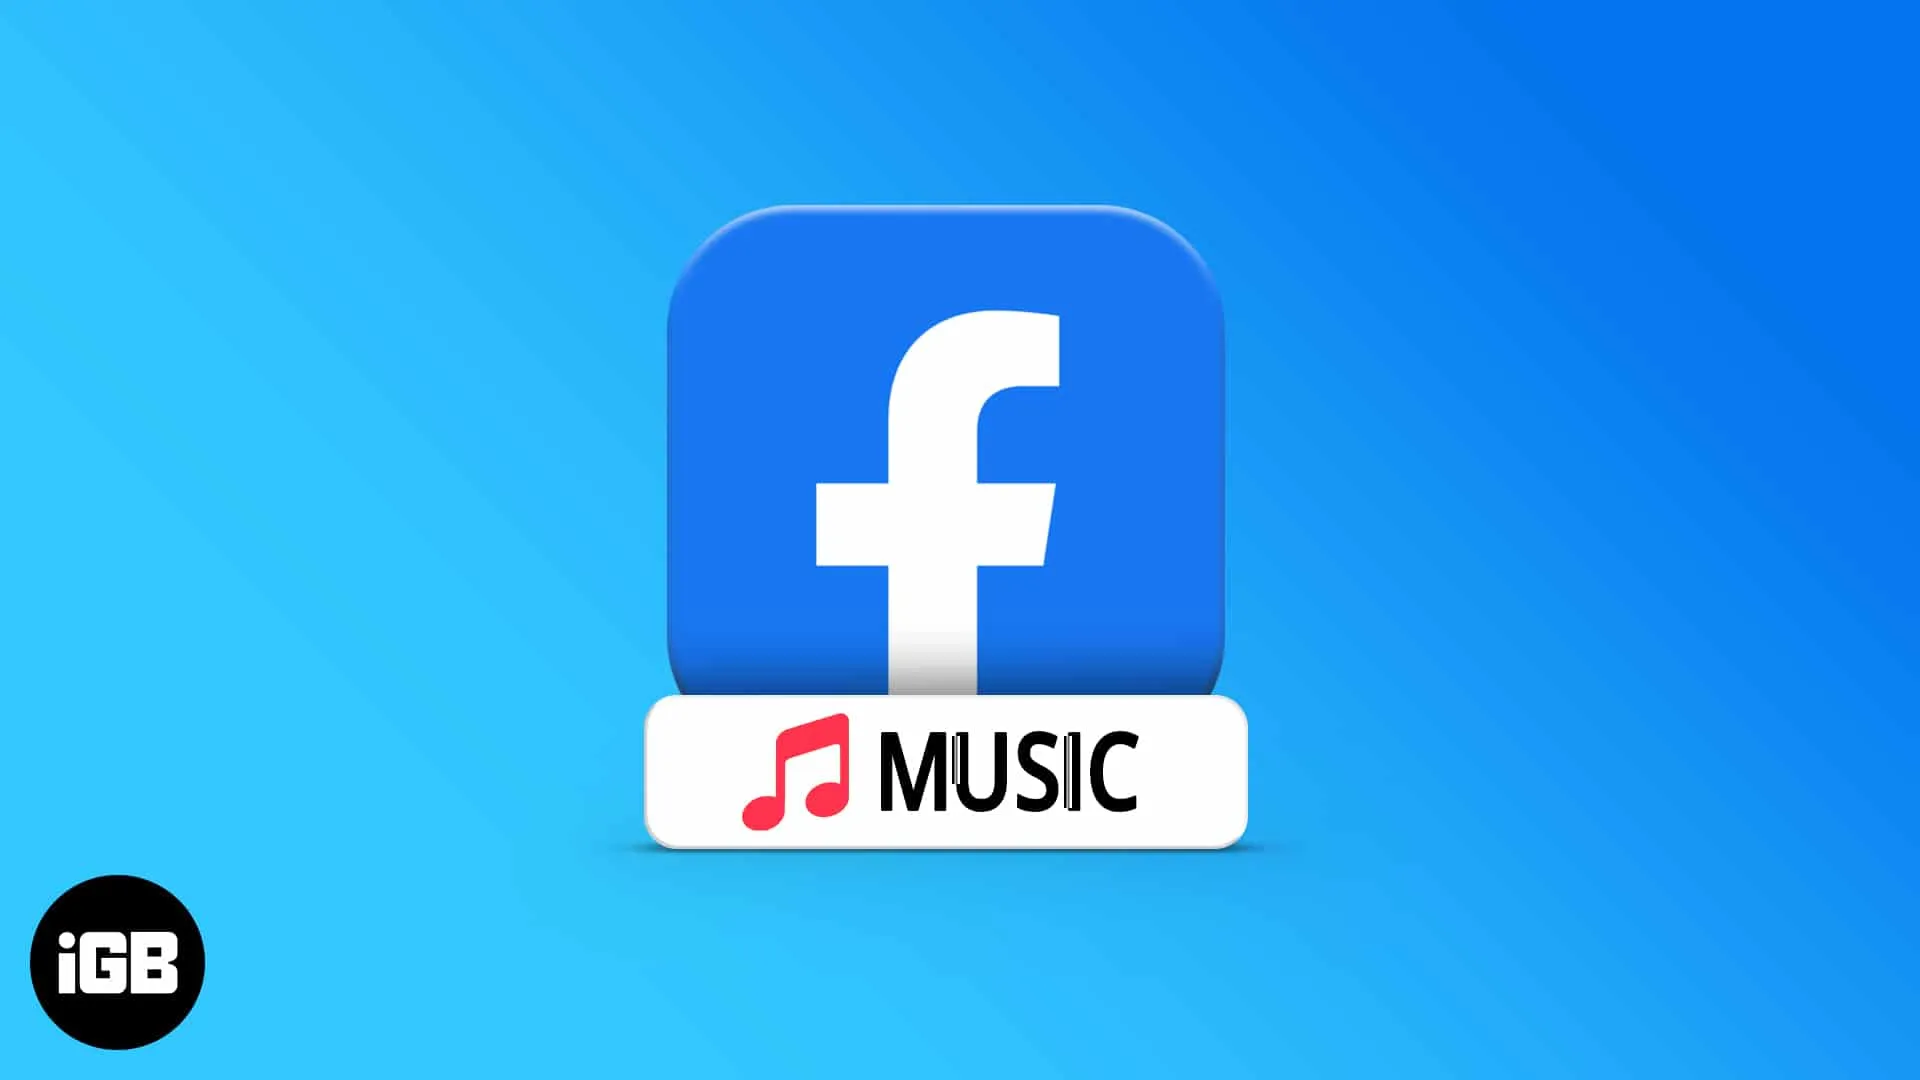 Как добавить музыку в свой профиль и историю Facebook на iPhone и Android